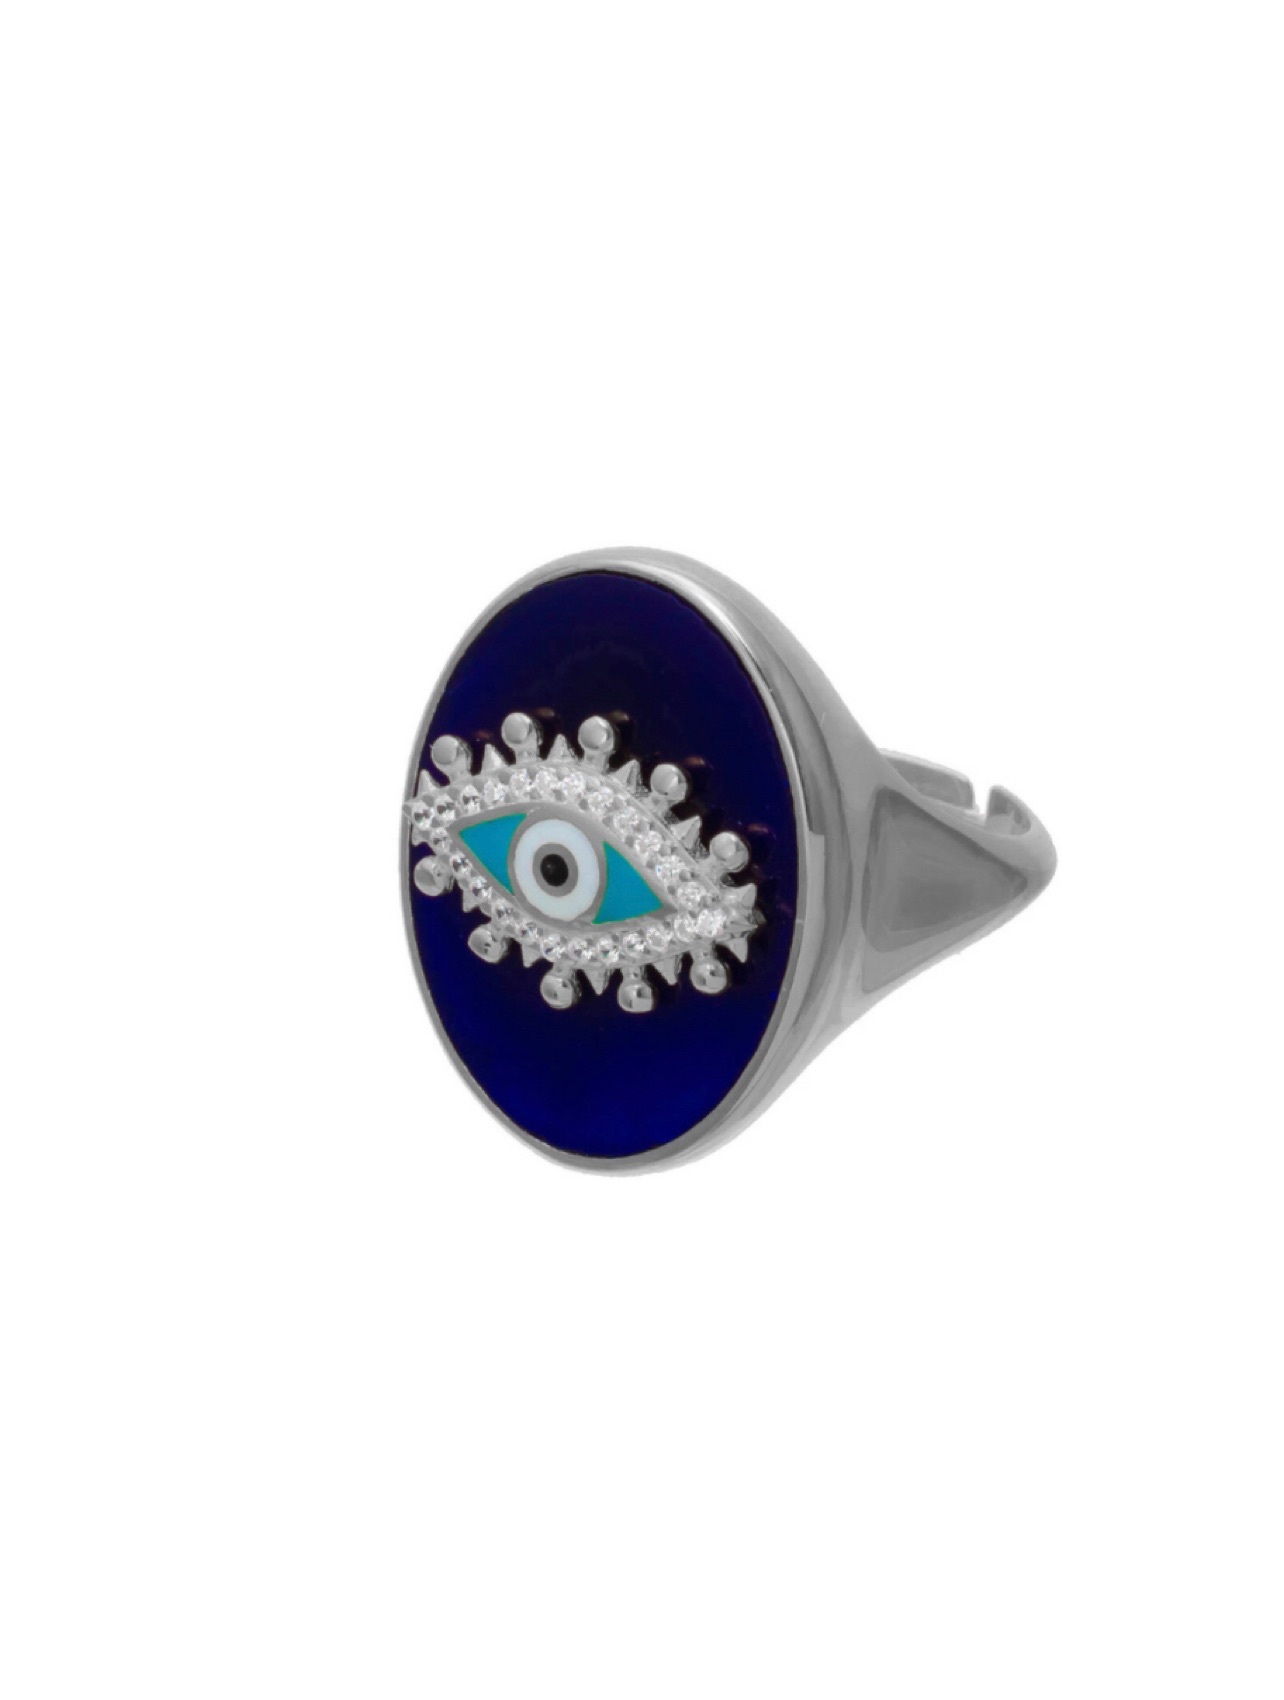 Кольцо-печатка Око, серебро 925, родий, синяя эмаль